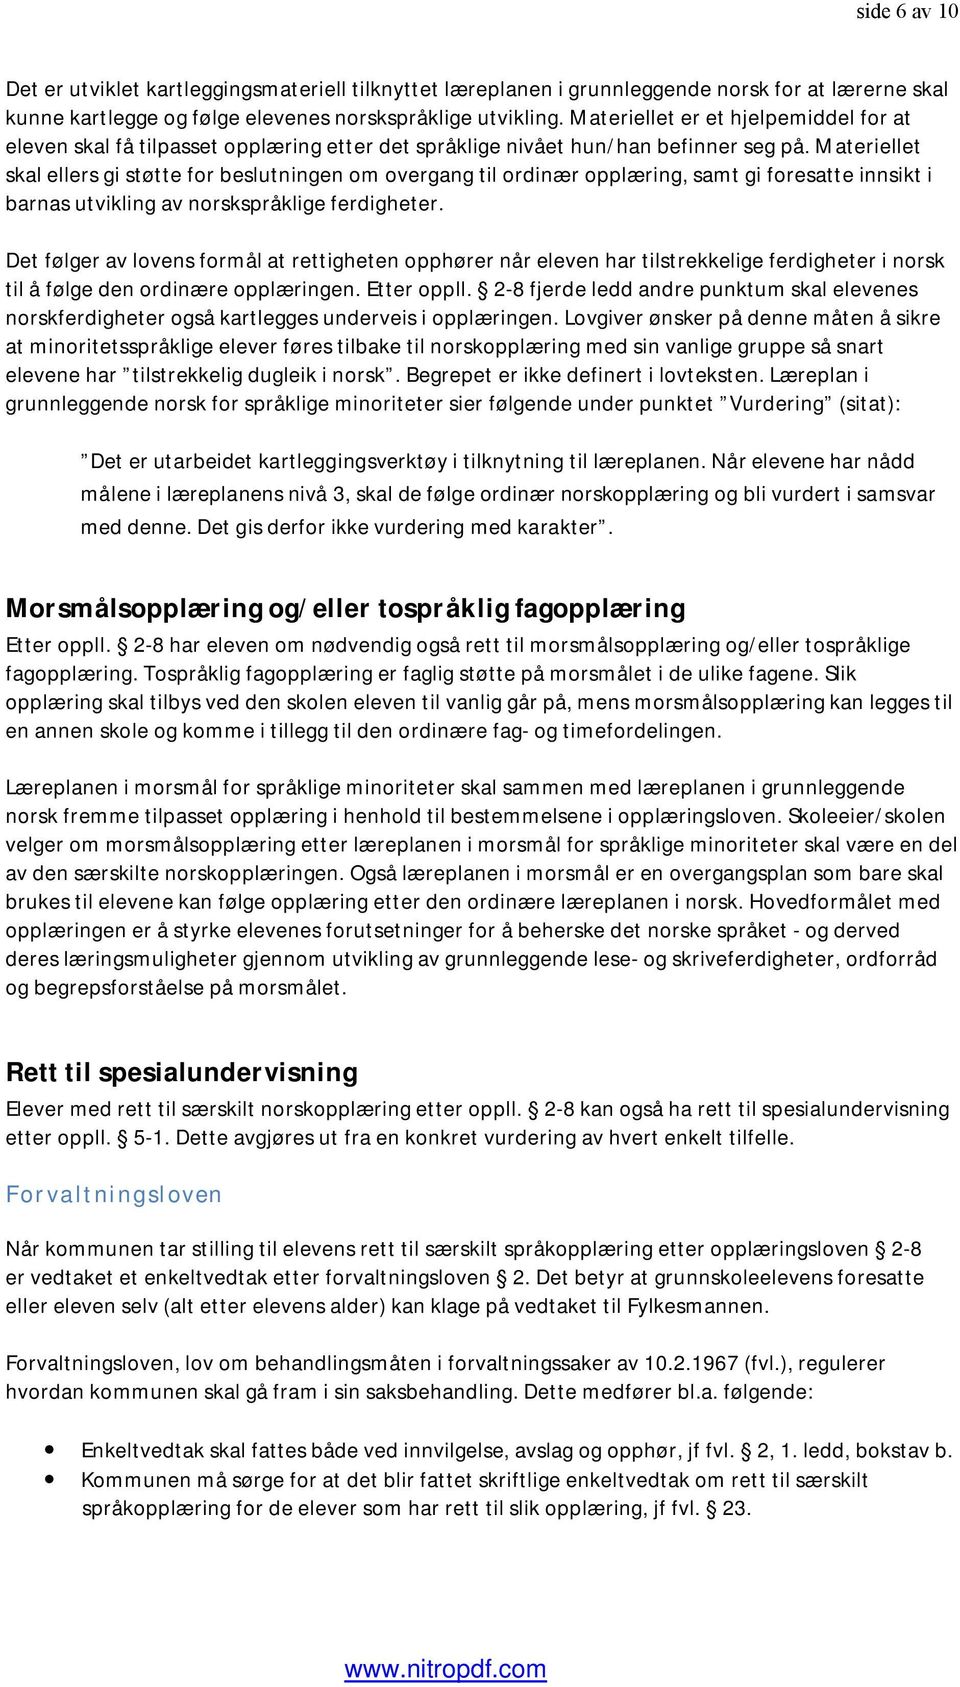 Materiellet skal ellers gi støtte for beslutningen om overgang til ordinær opplæring, samt gi foresatte innsikt i barnas utvikling av norskspråklige ferdigheter.